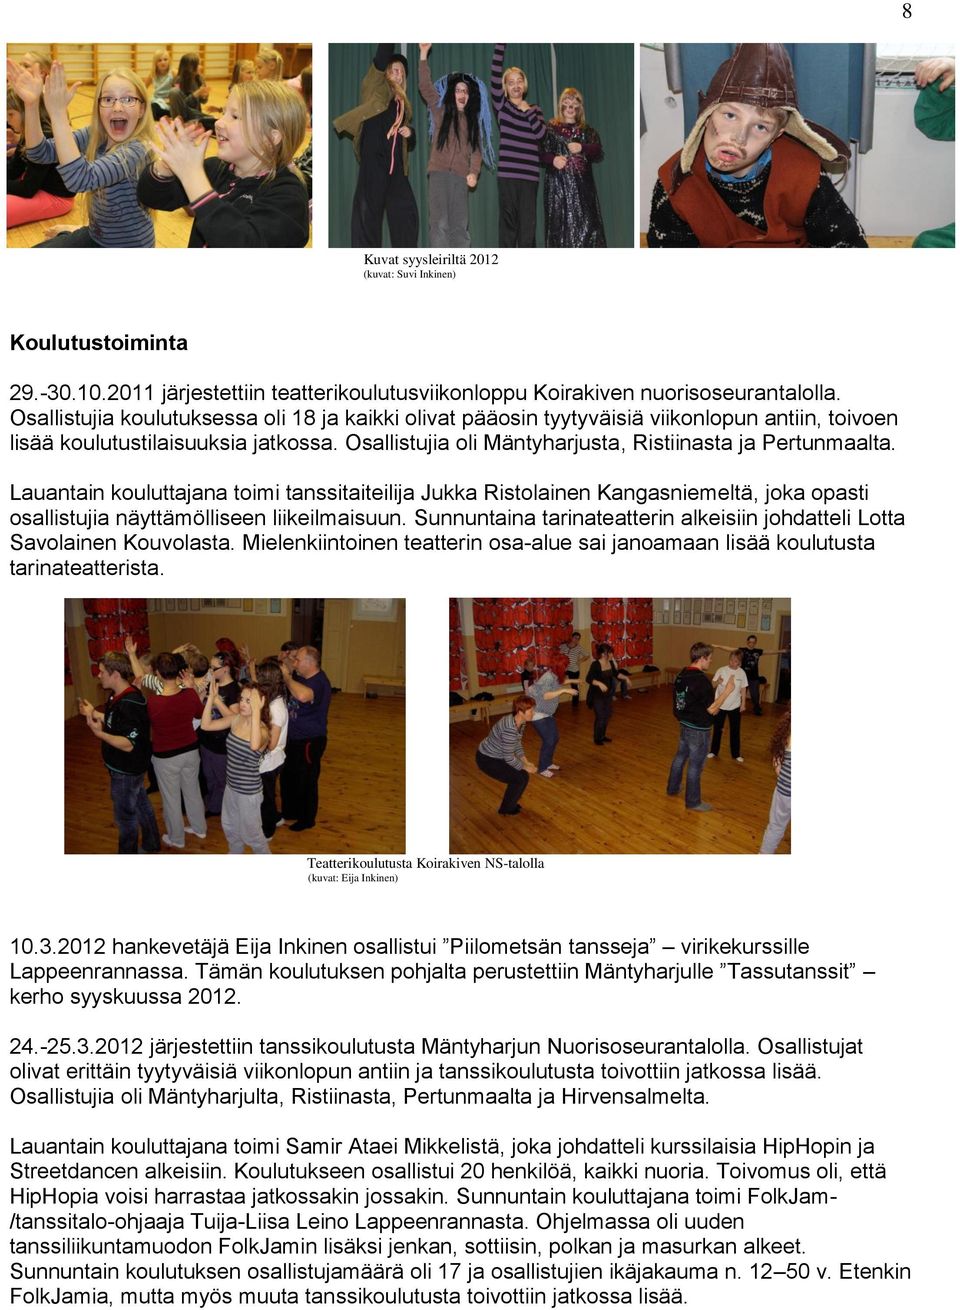 Lauantain kouluttajana toimi tanssitaiteilija Jukka Ristolainen Kangasniemeltä, joka opasti osallistujia näyttämölliseen liikeilmaisuun.